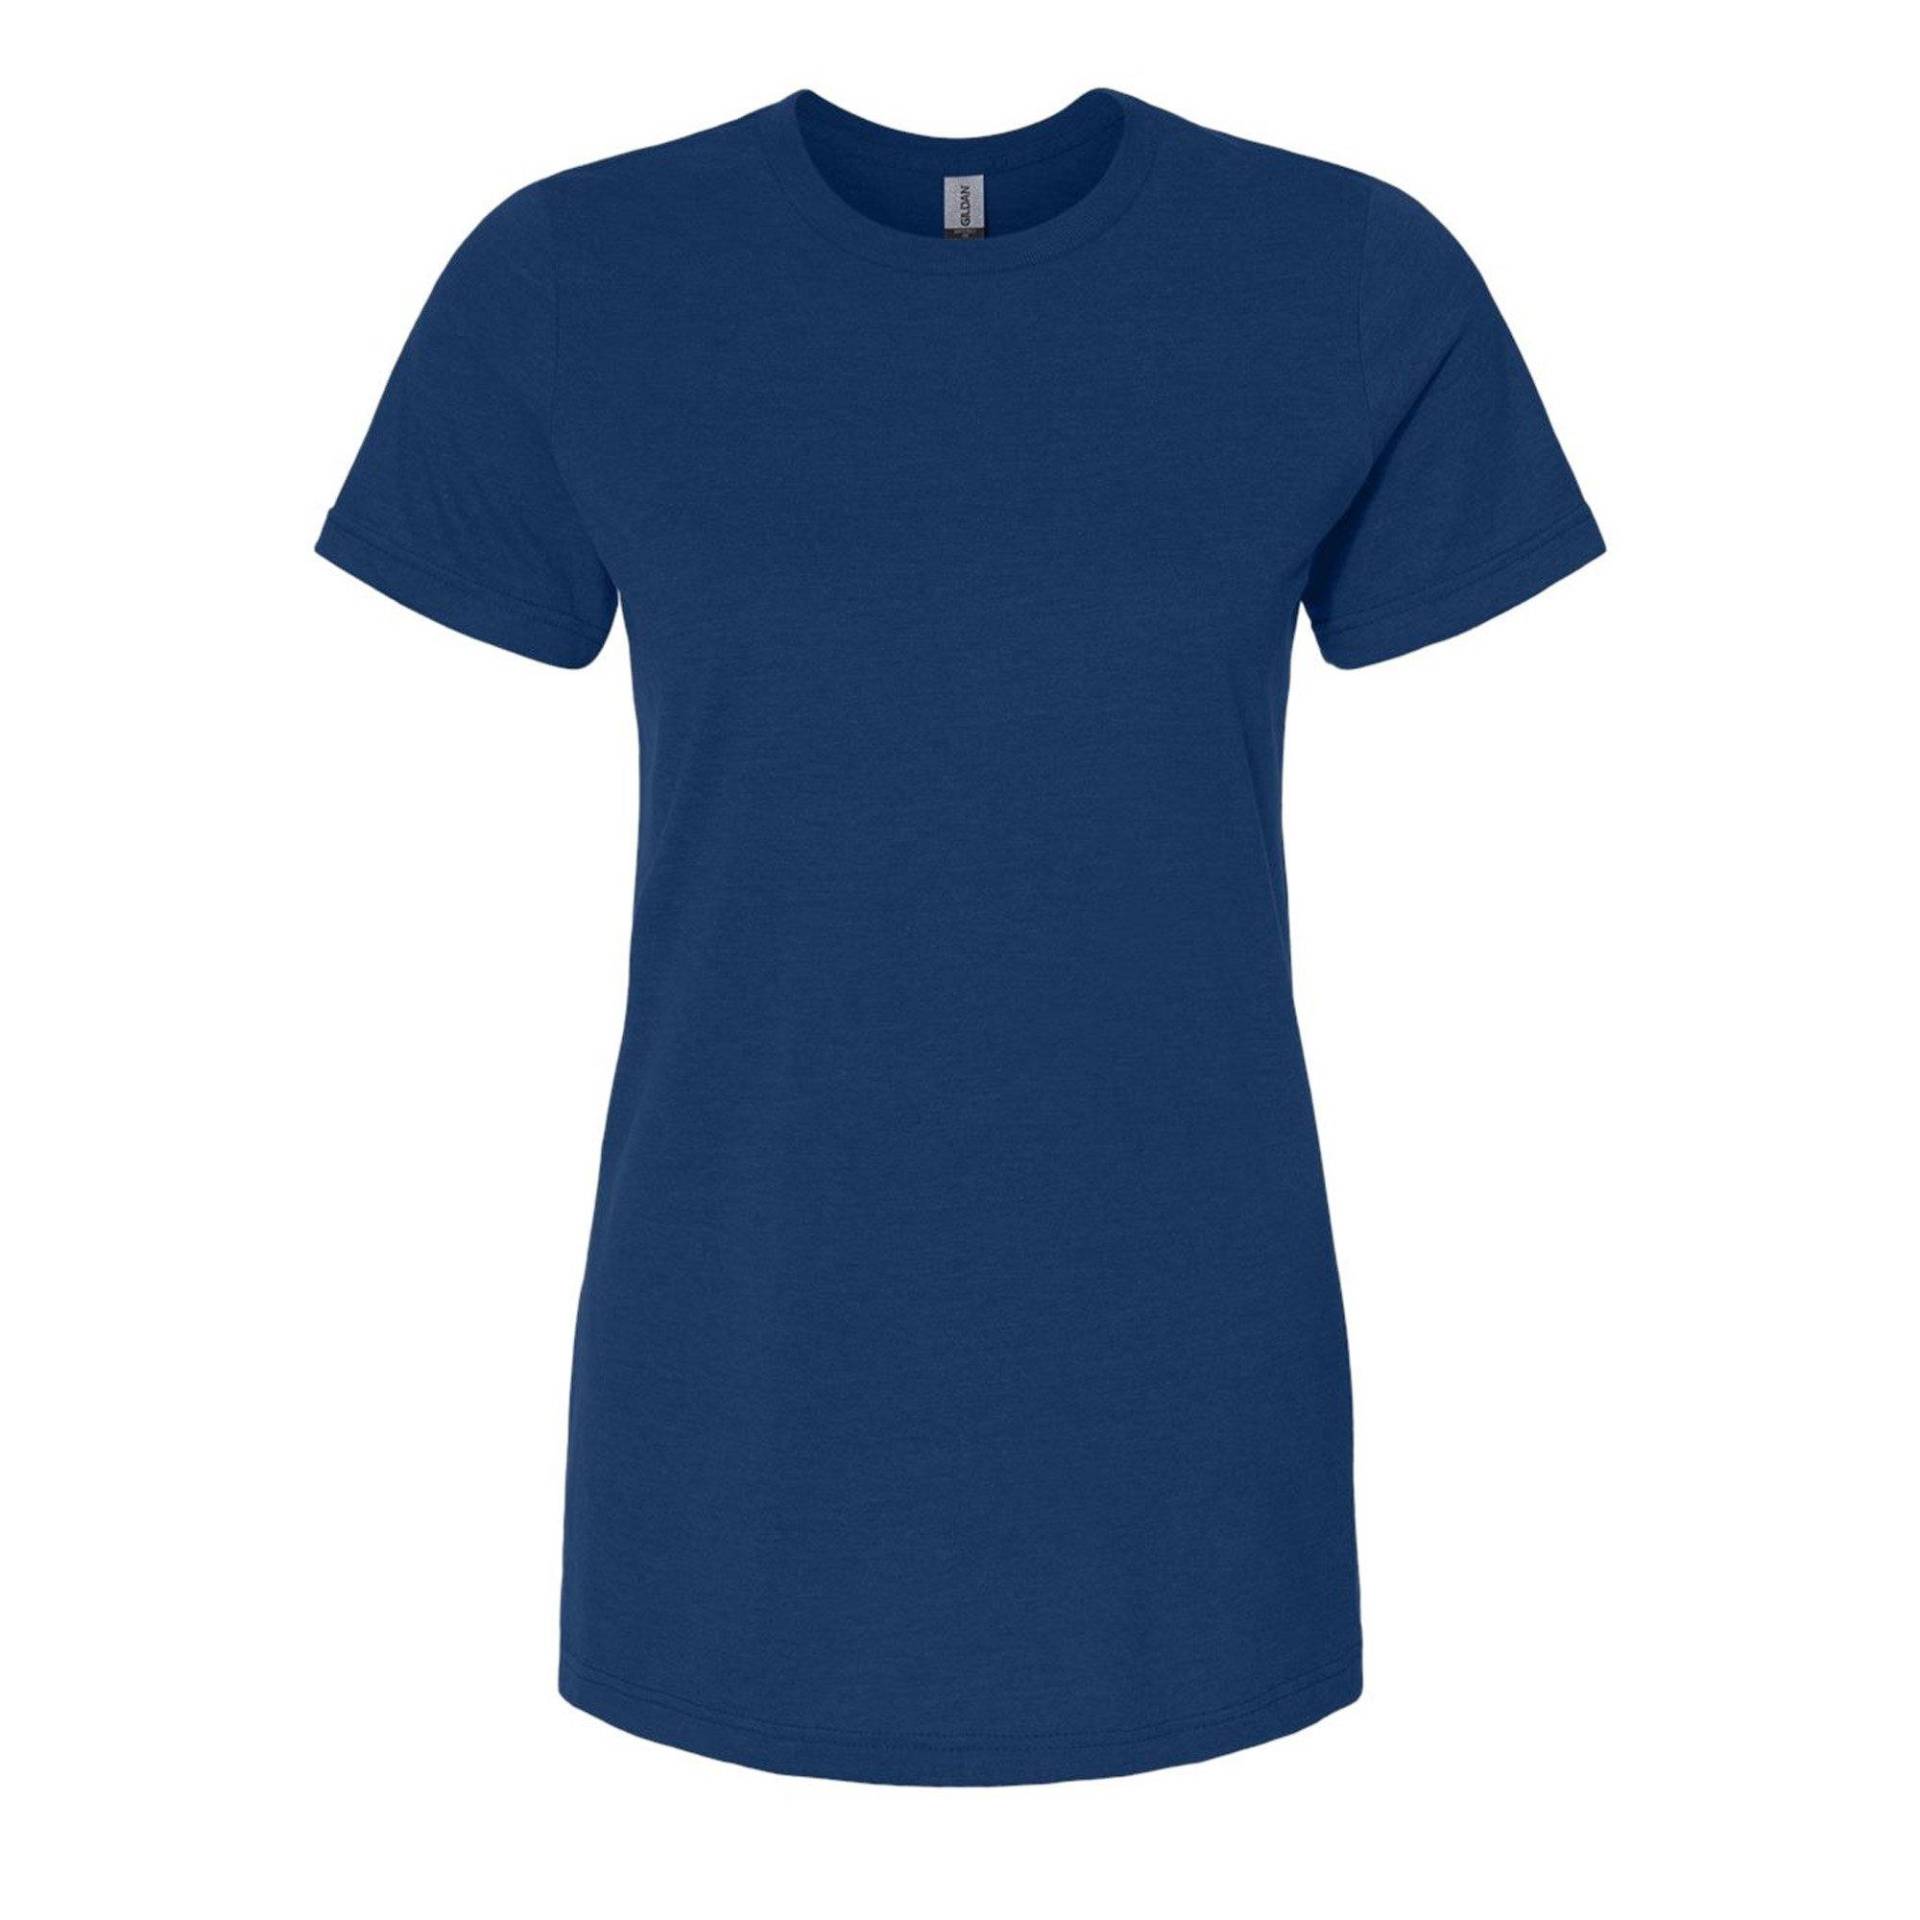 Softstyle Tshirt Damen Marine XL von Gildan